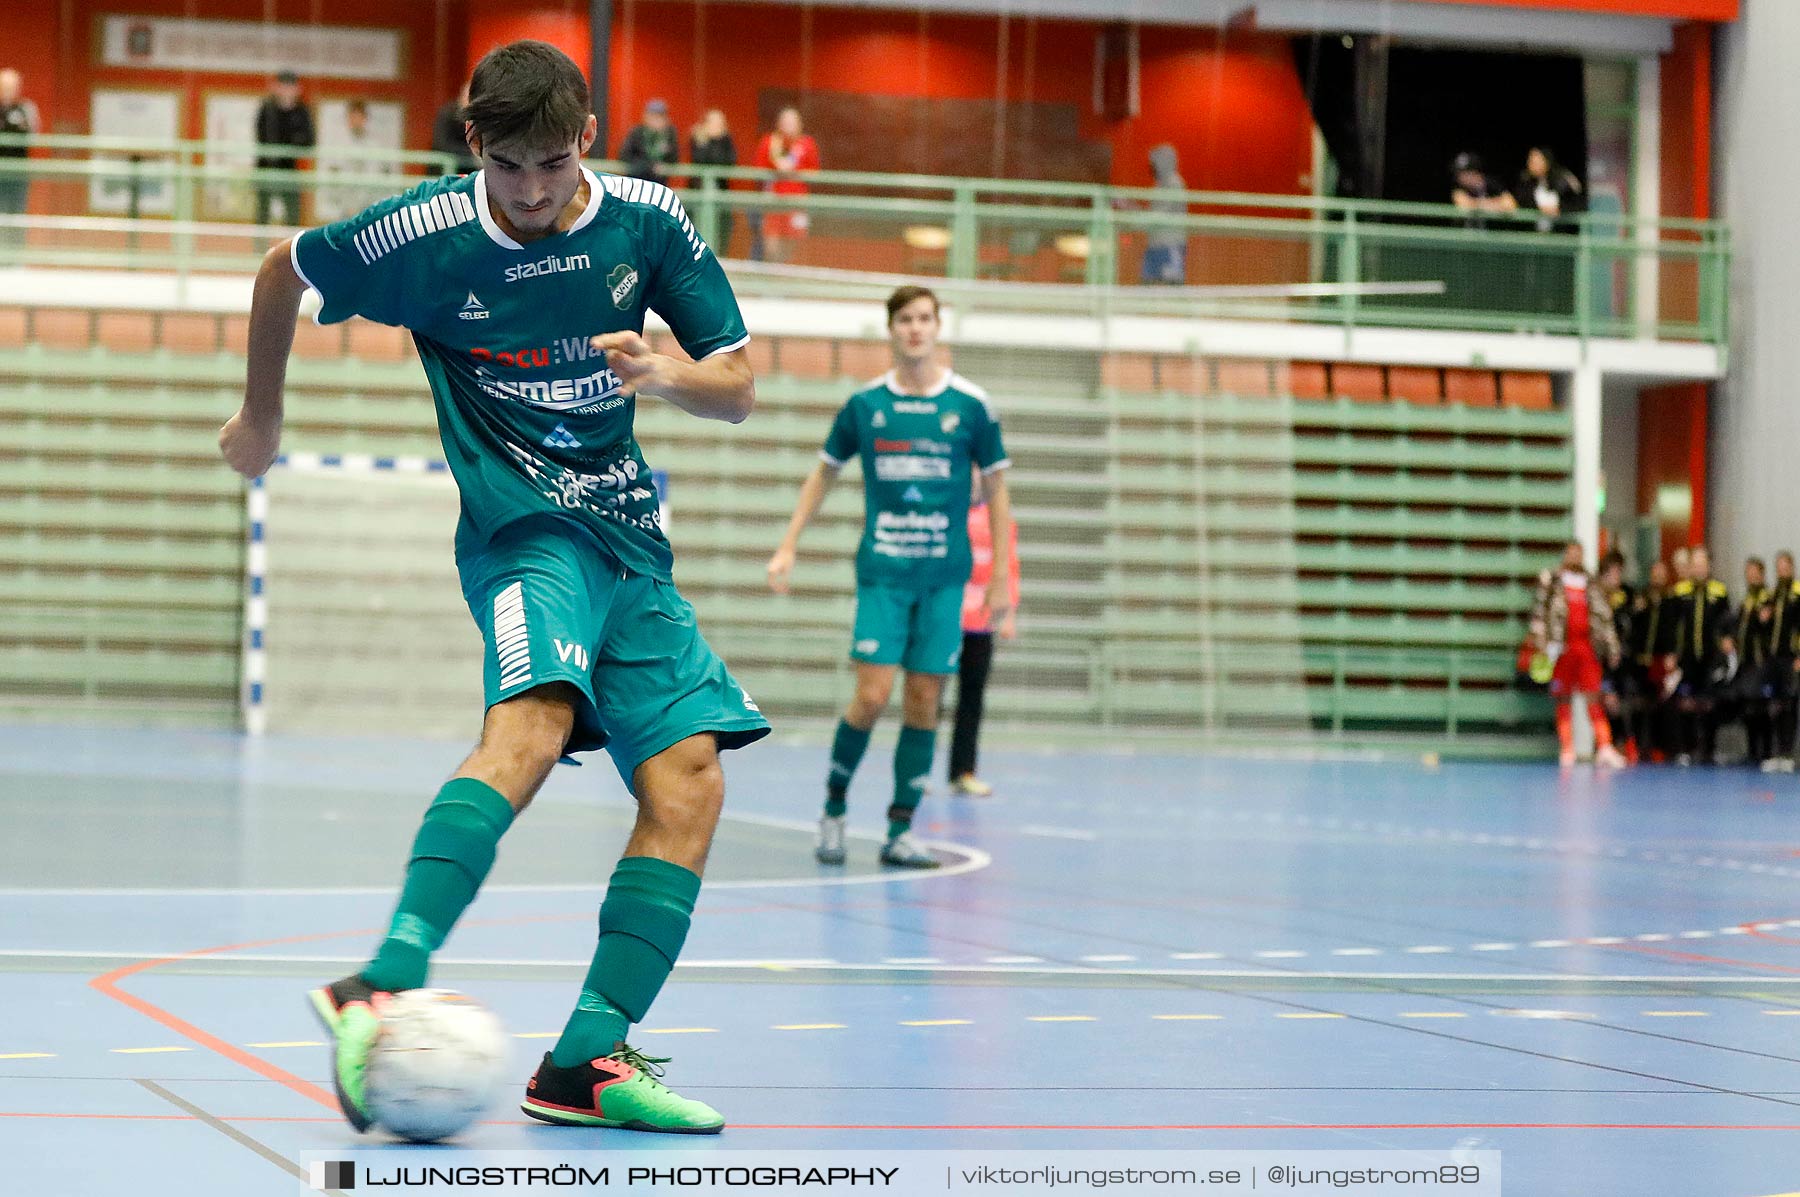 Skövde Futsalcup 2019 Herrar Vårgårda IK-Våmbs IF,herr,Arena Skövde,Skövde,Sverige,Futsal,,2019,227307